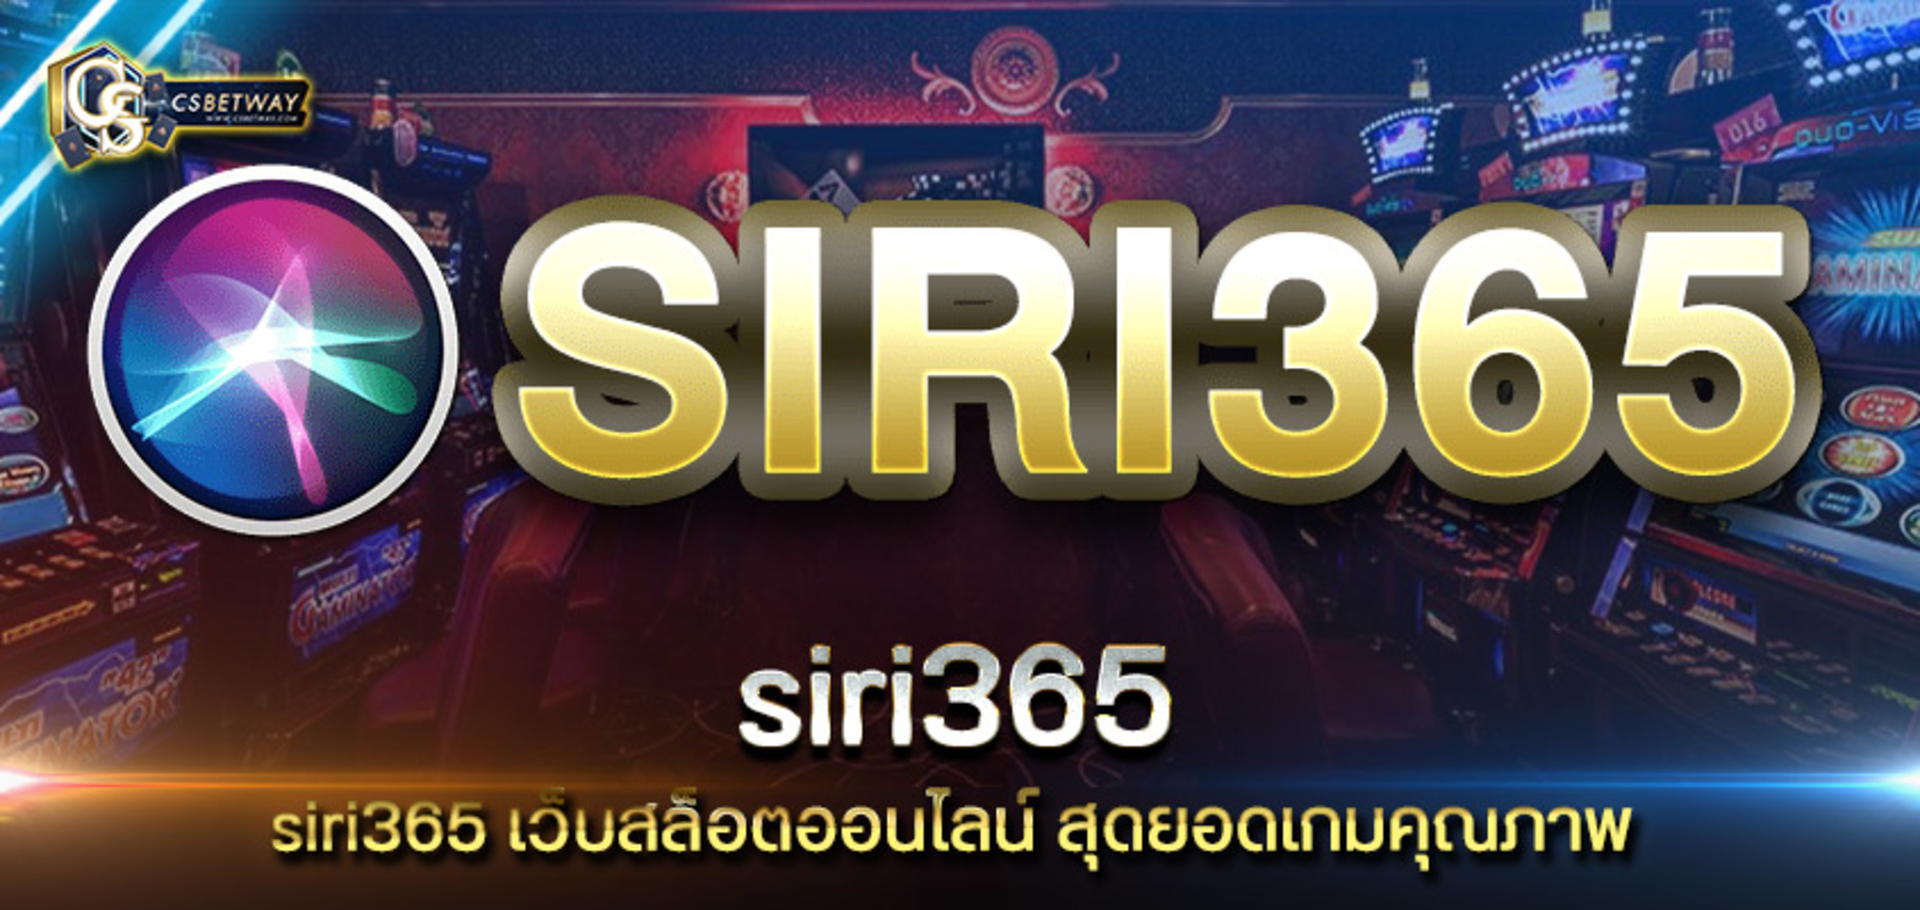 siri365 เว็บสล็อตออนไลน์ สุดยอดเกมคุณภาพ siri365 ปลอดภัย ถอนเงินรวดเร็ว